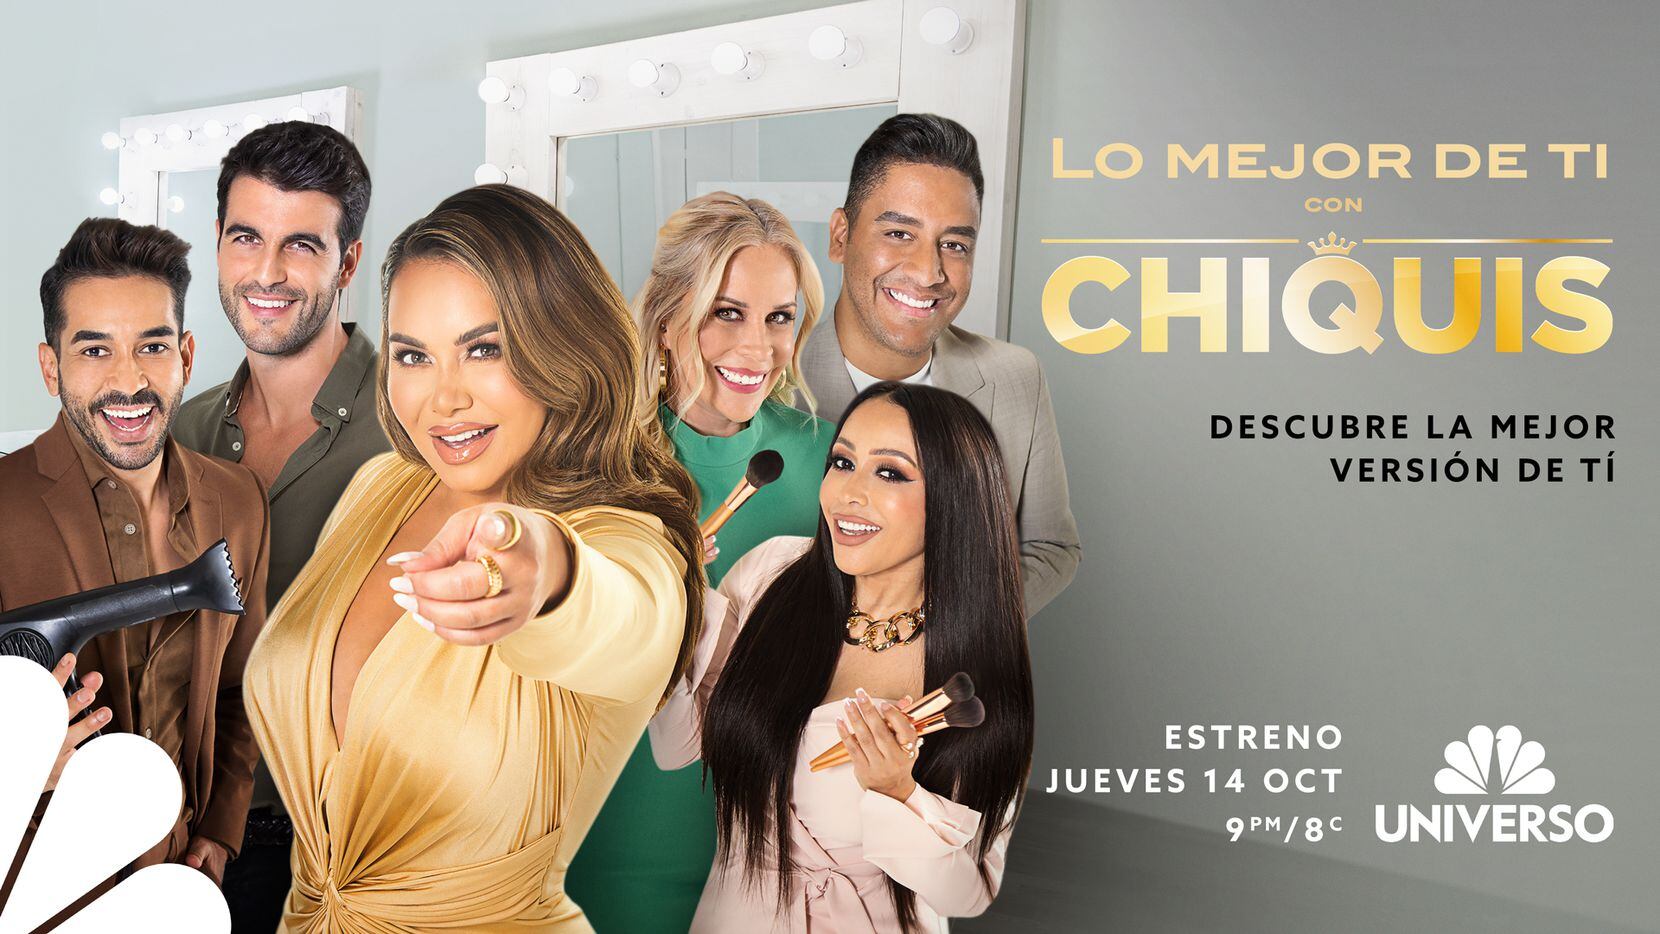 "Lo Mejor de Ti con Chiquis" inicia el jueves 14 de octubre por NBC Universo.